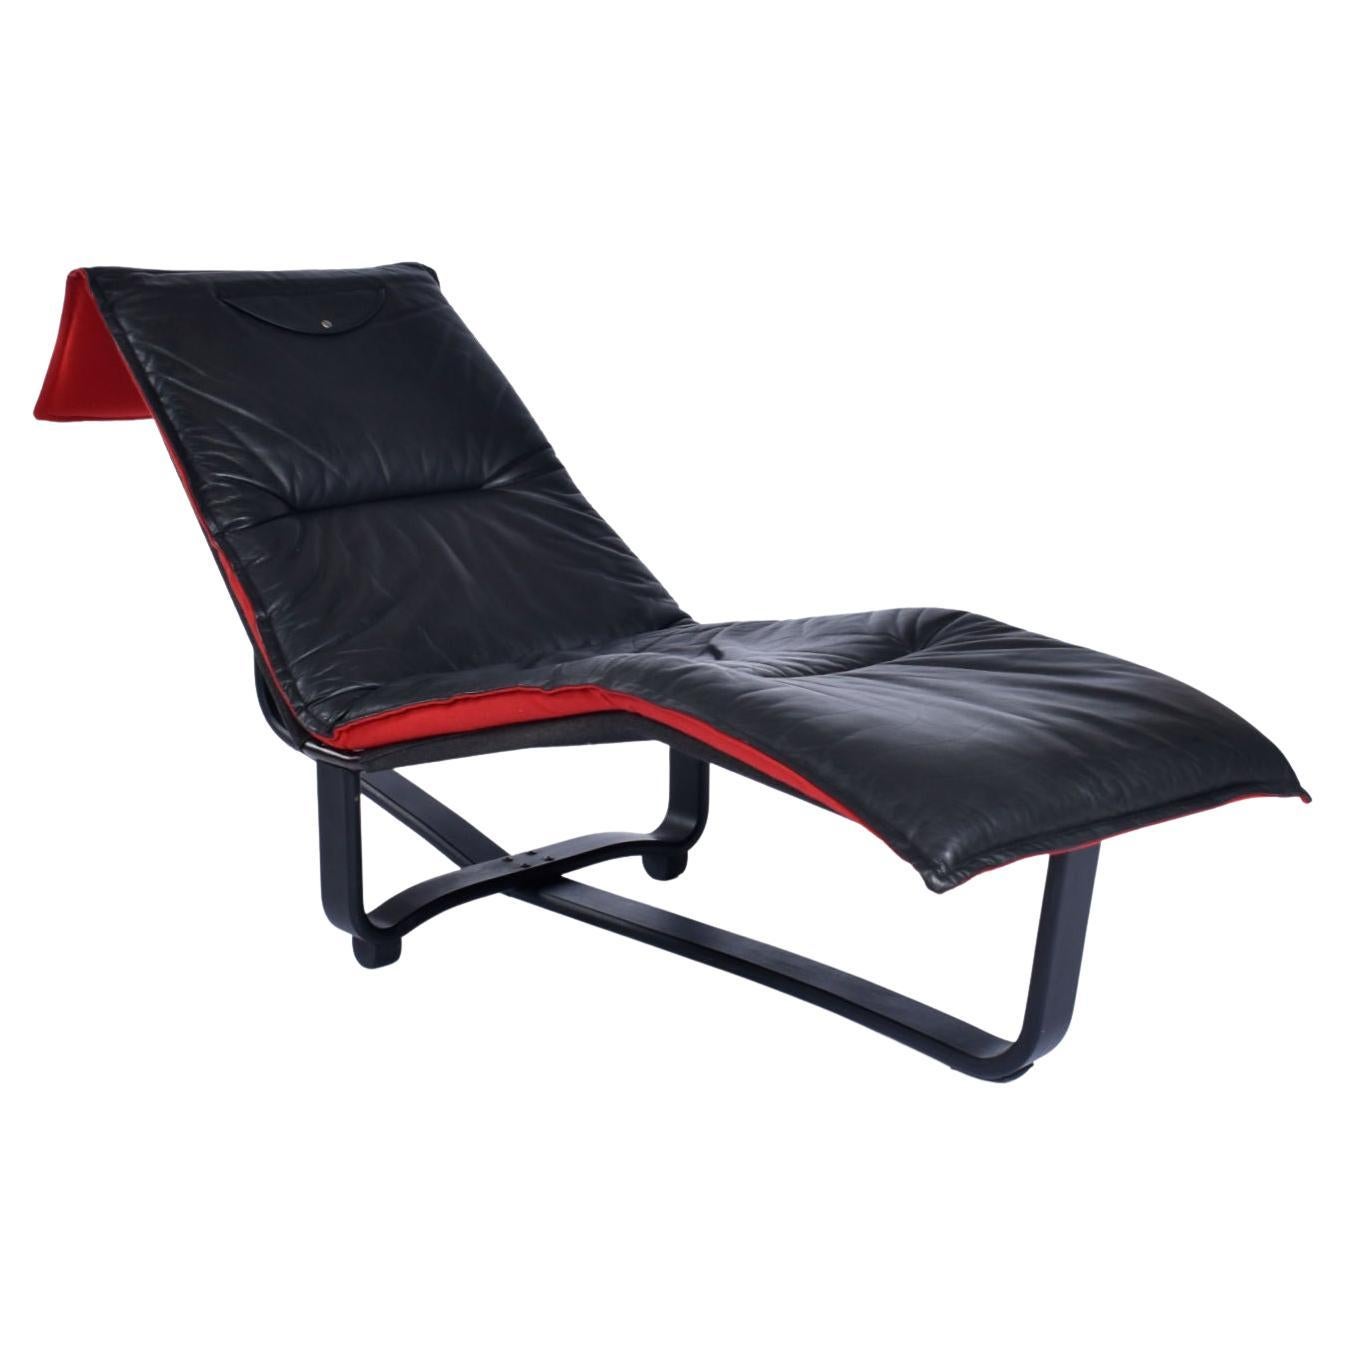 Westnofa Chaise longue en cuir de fabrication norvégienne avec coussin réversible. Cette chaise est exemplaire du génie du design scandinave. Il accomplit tellement de choses, avec des moyens si simples. Le coussin d'origine est en cuir noir d'un